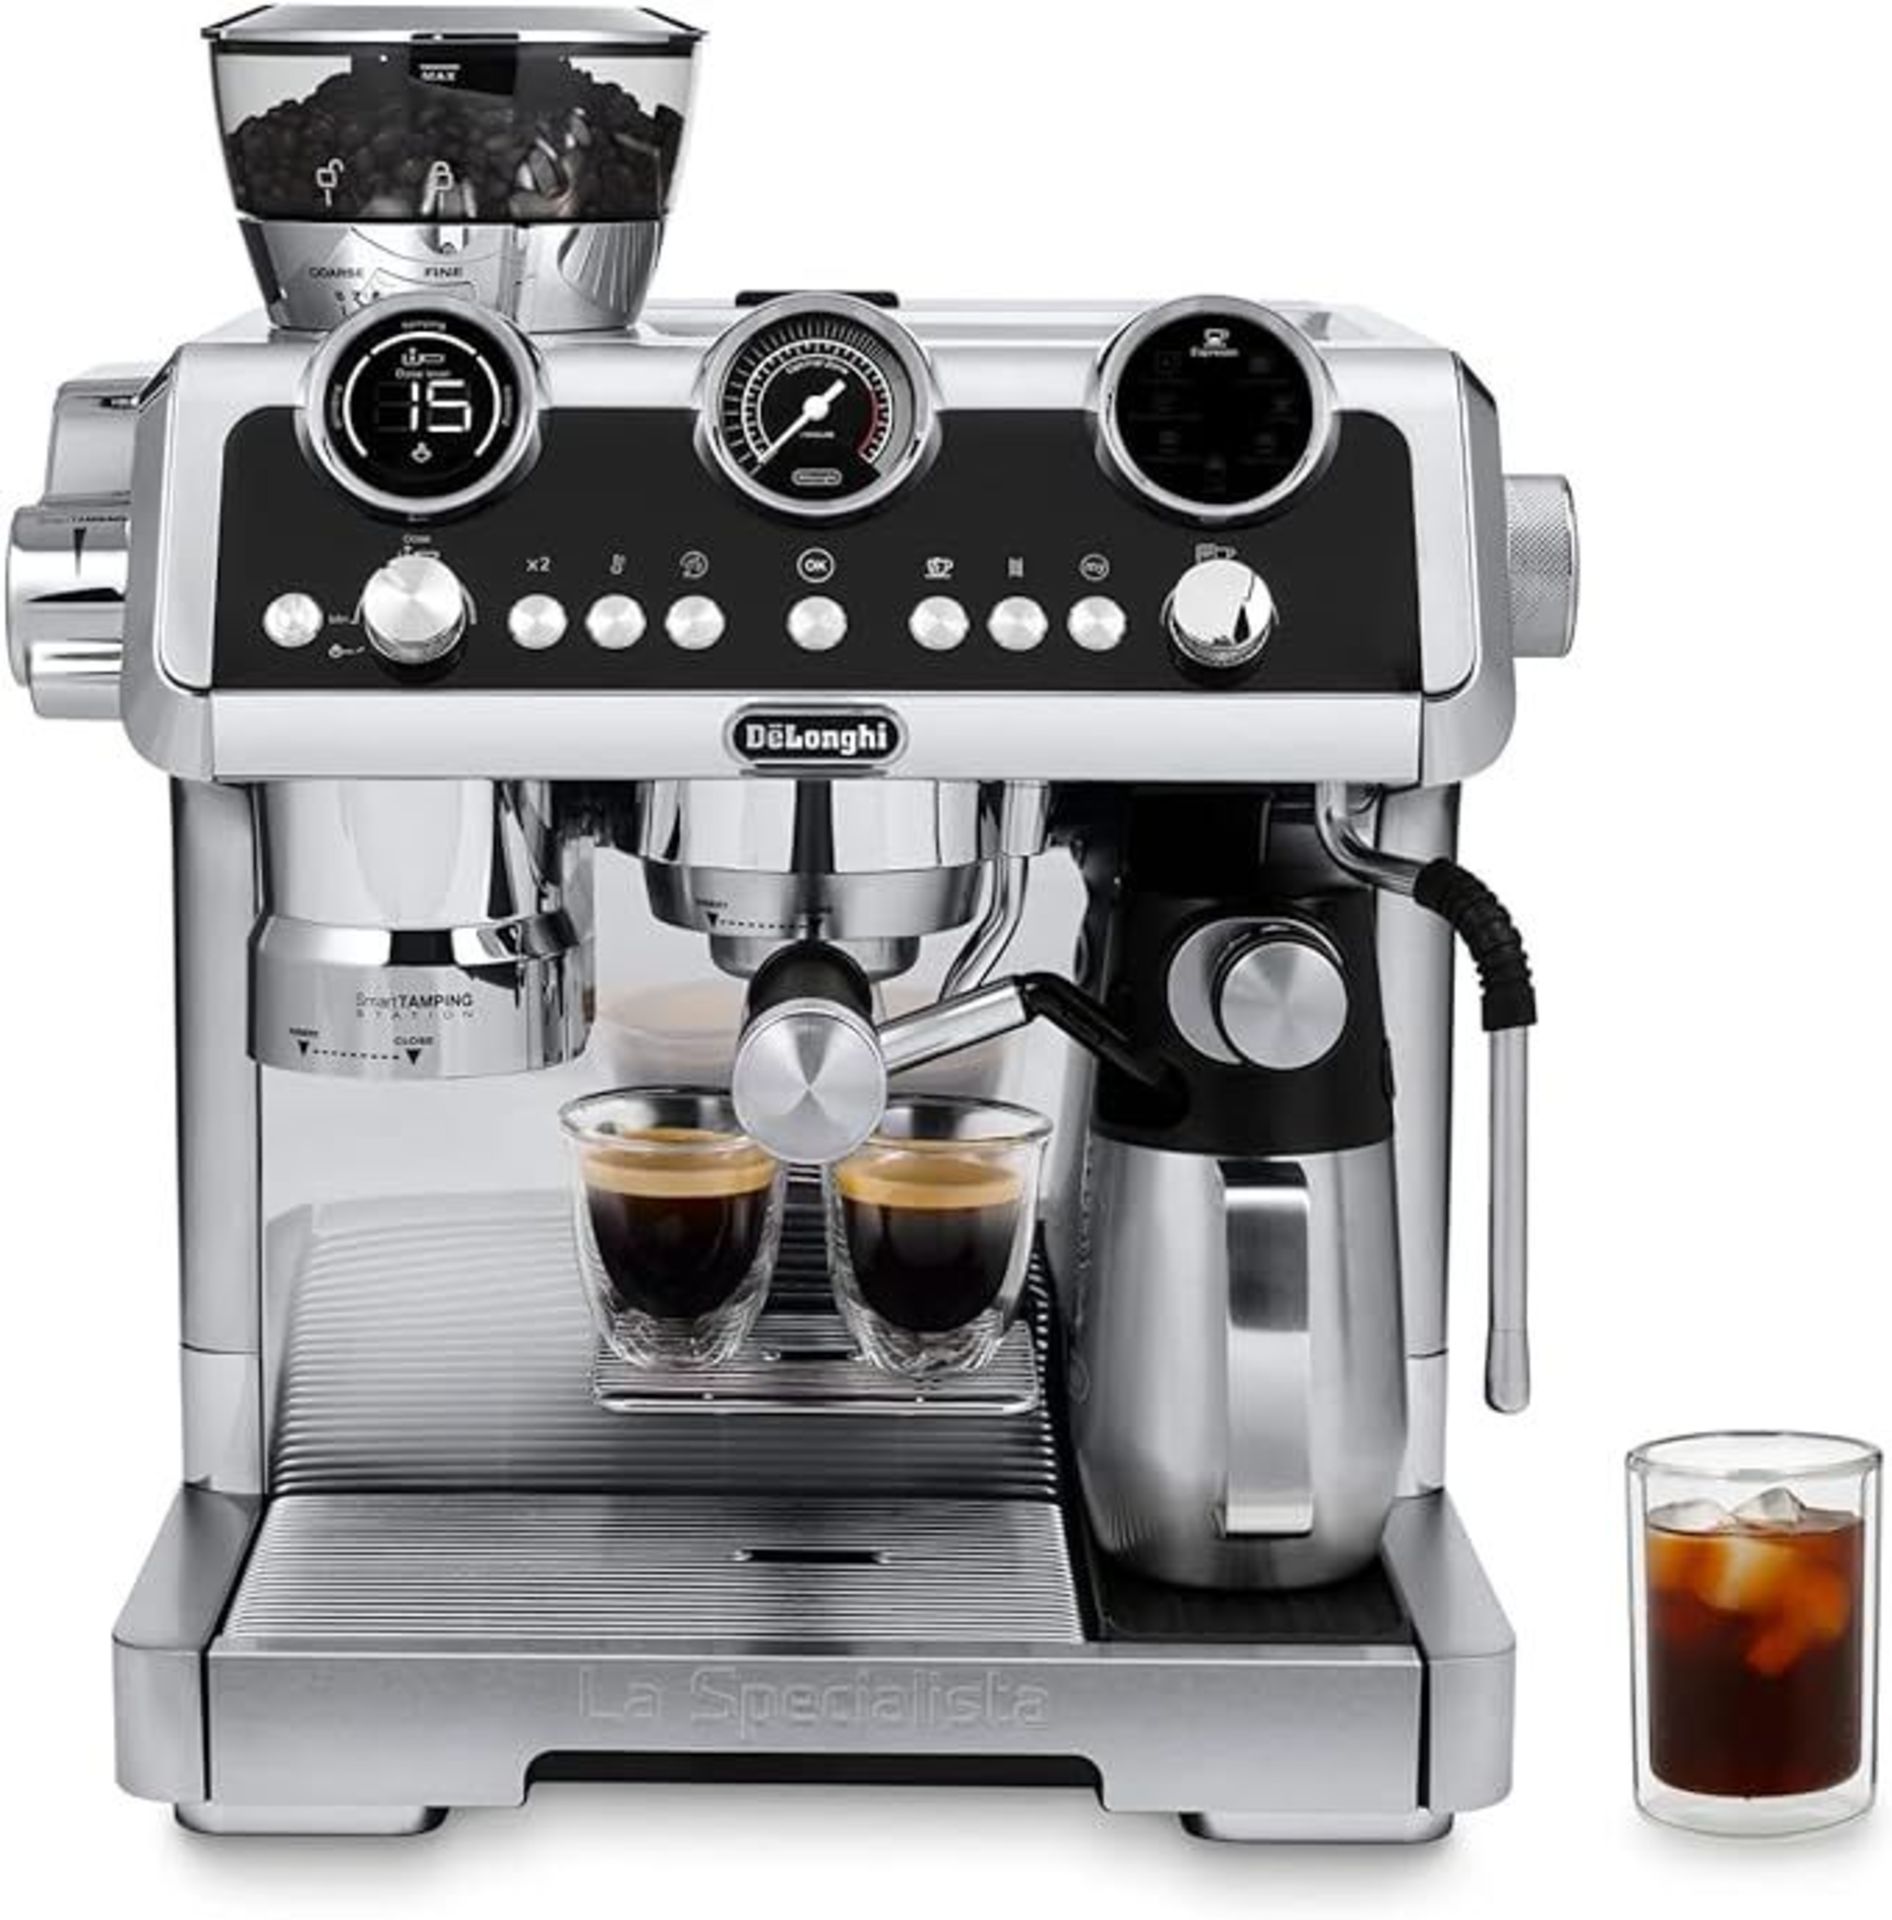 De'Longhi La Specialista Maestro EC9865.M Cold Brew Coffee, Manual Coffee Machine, Cold Extraction